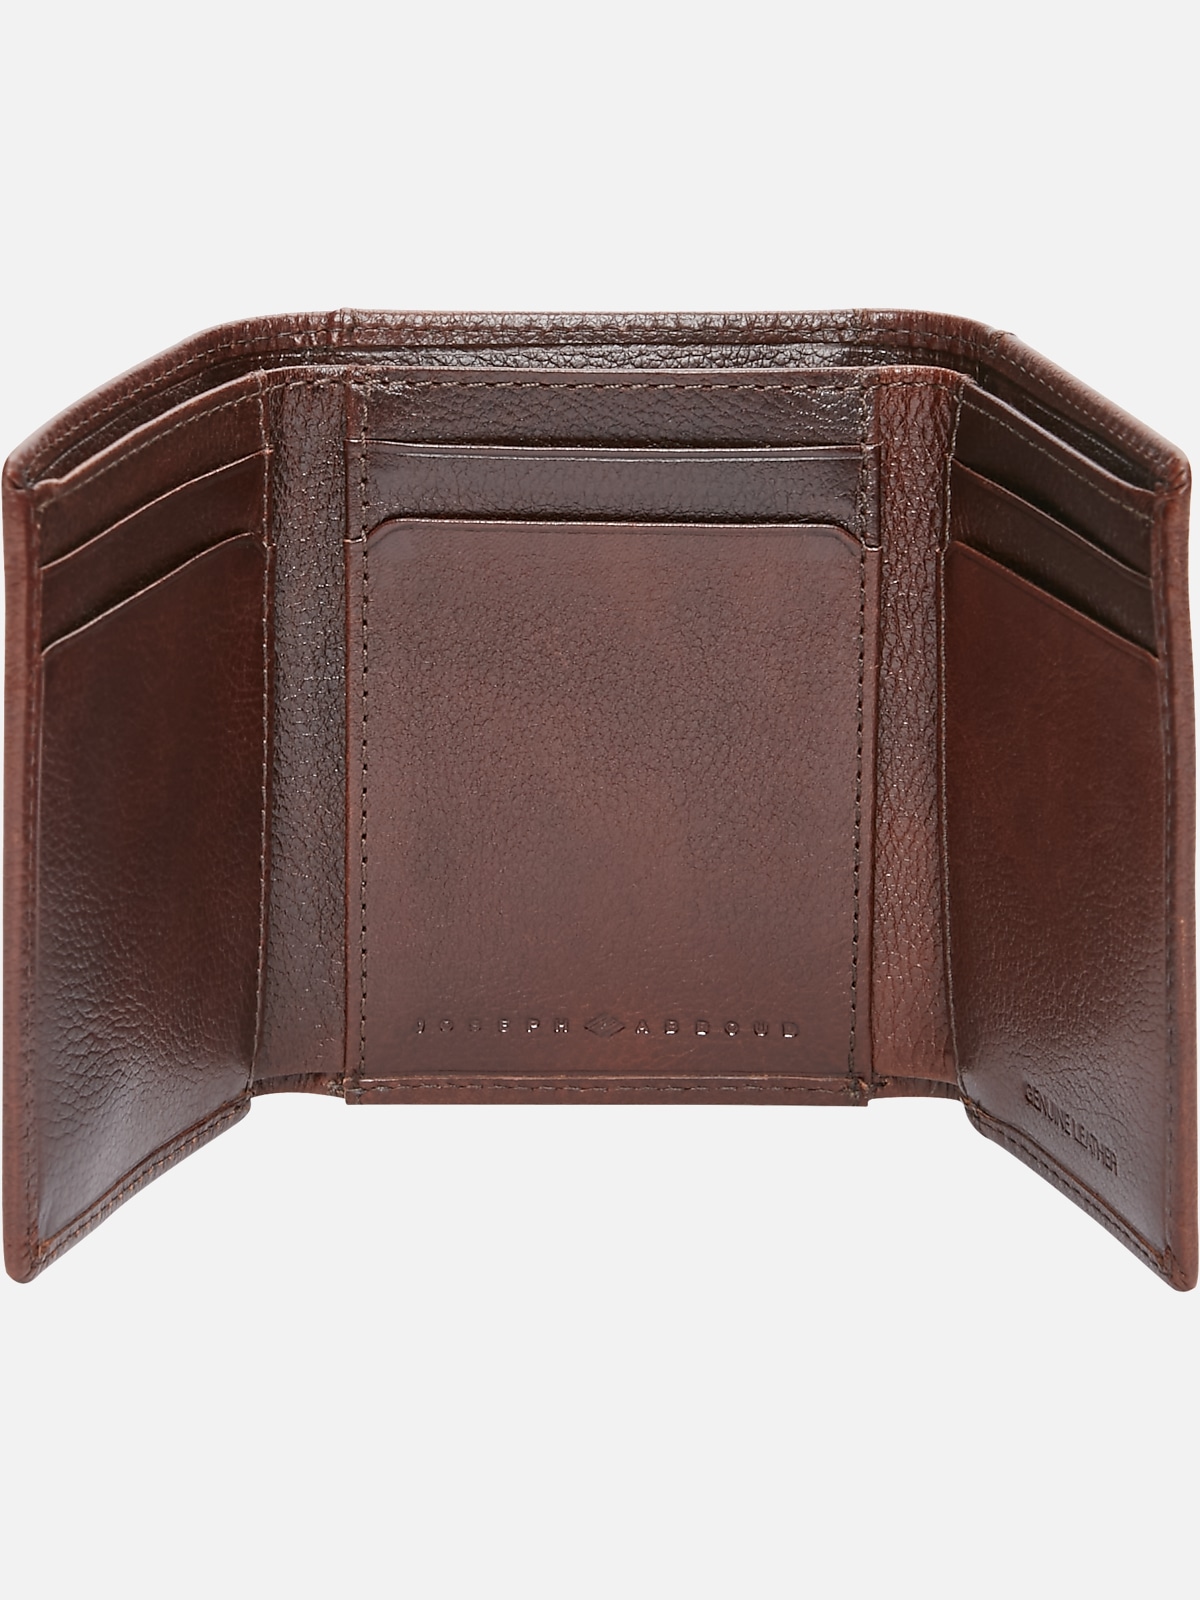 Joseph Abboud Trifold Leather Wallet | Wallets| Men's Wearhouse